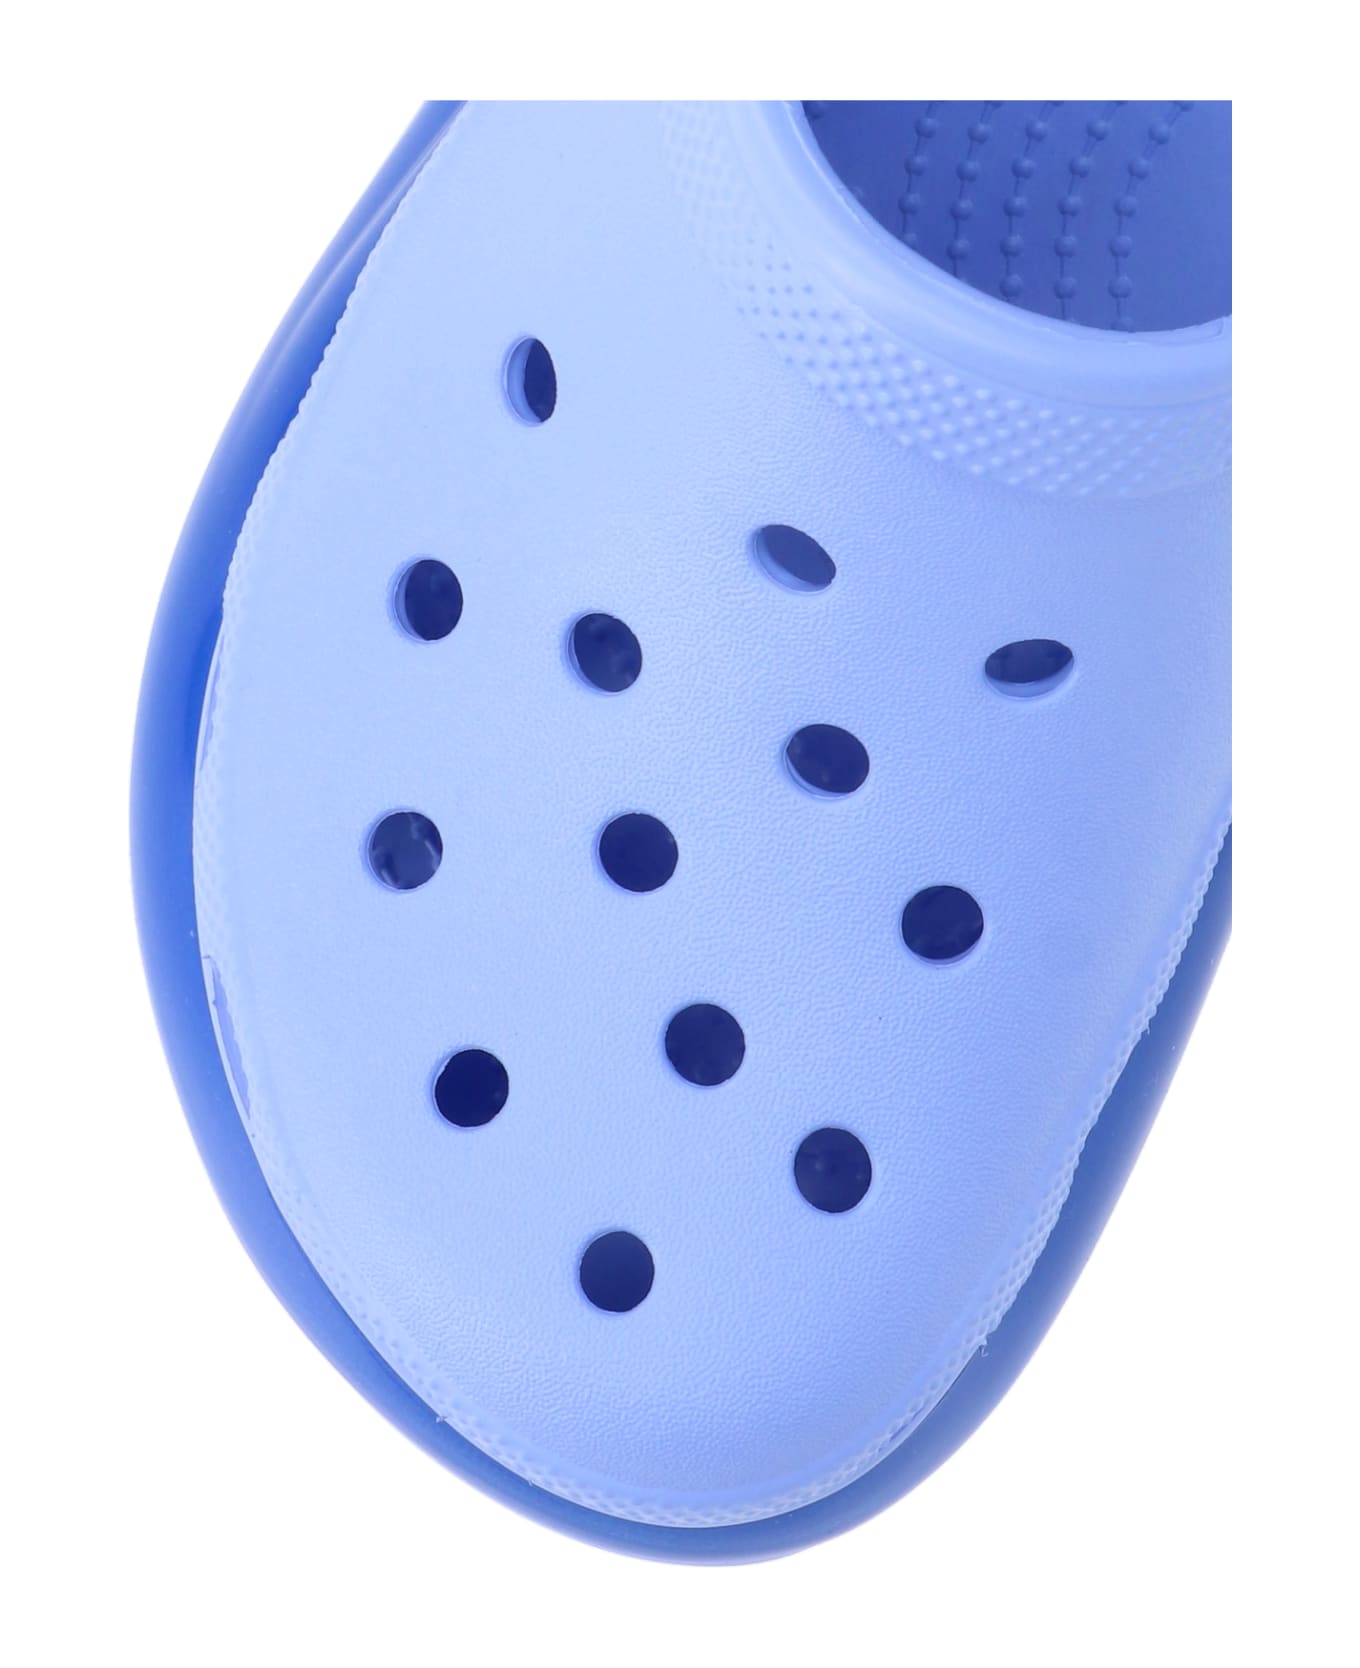 Crocs Flat Shoes - Light blue